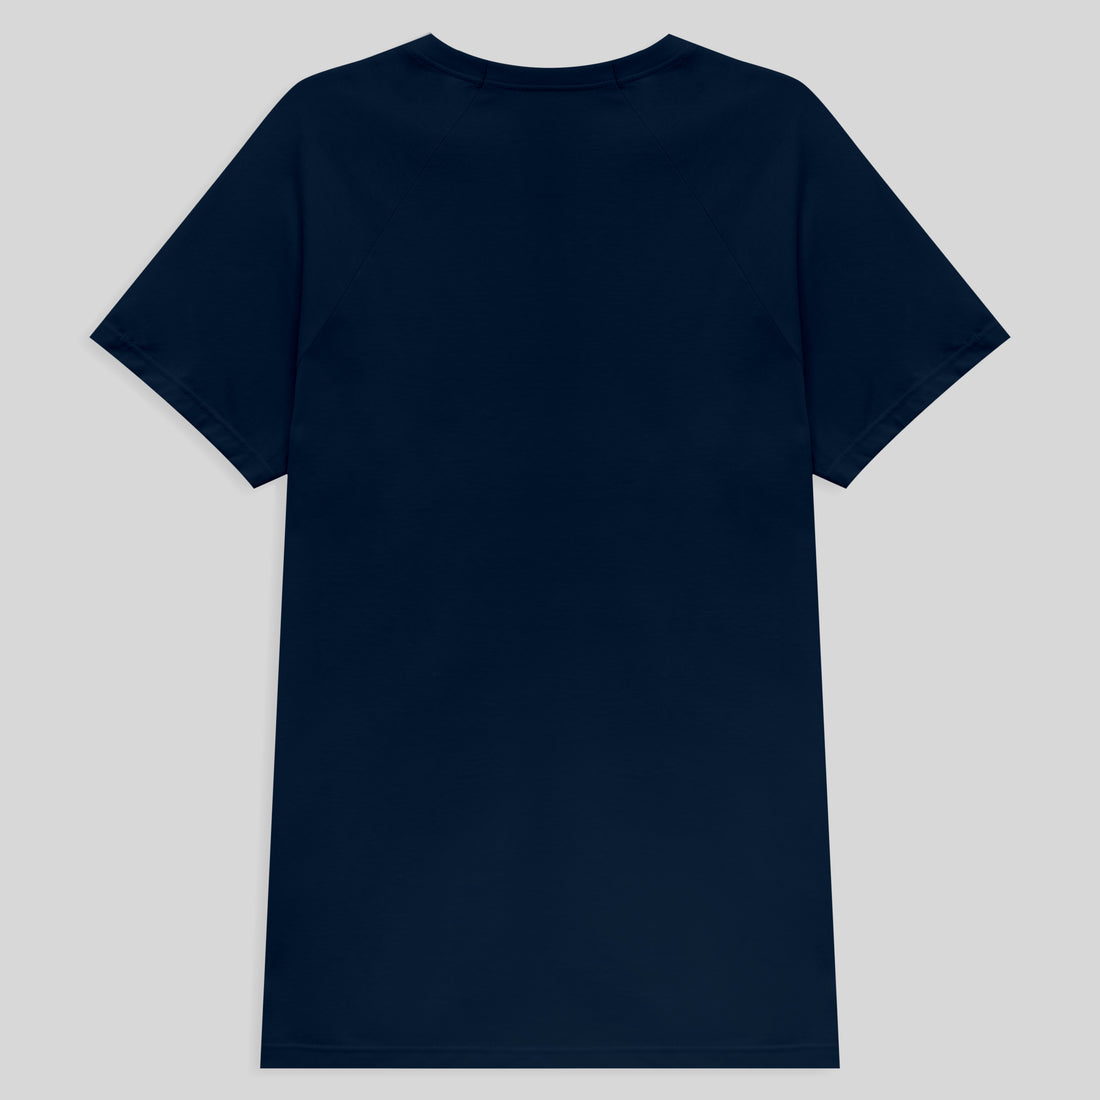 Camiseta Raglan Algodão Premium Masculina - Azul Marinho